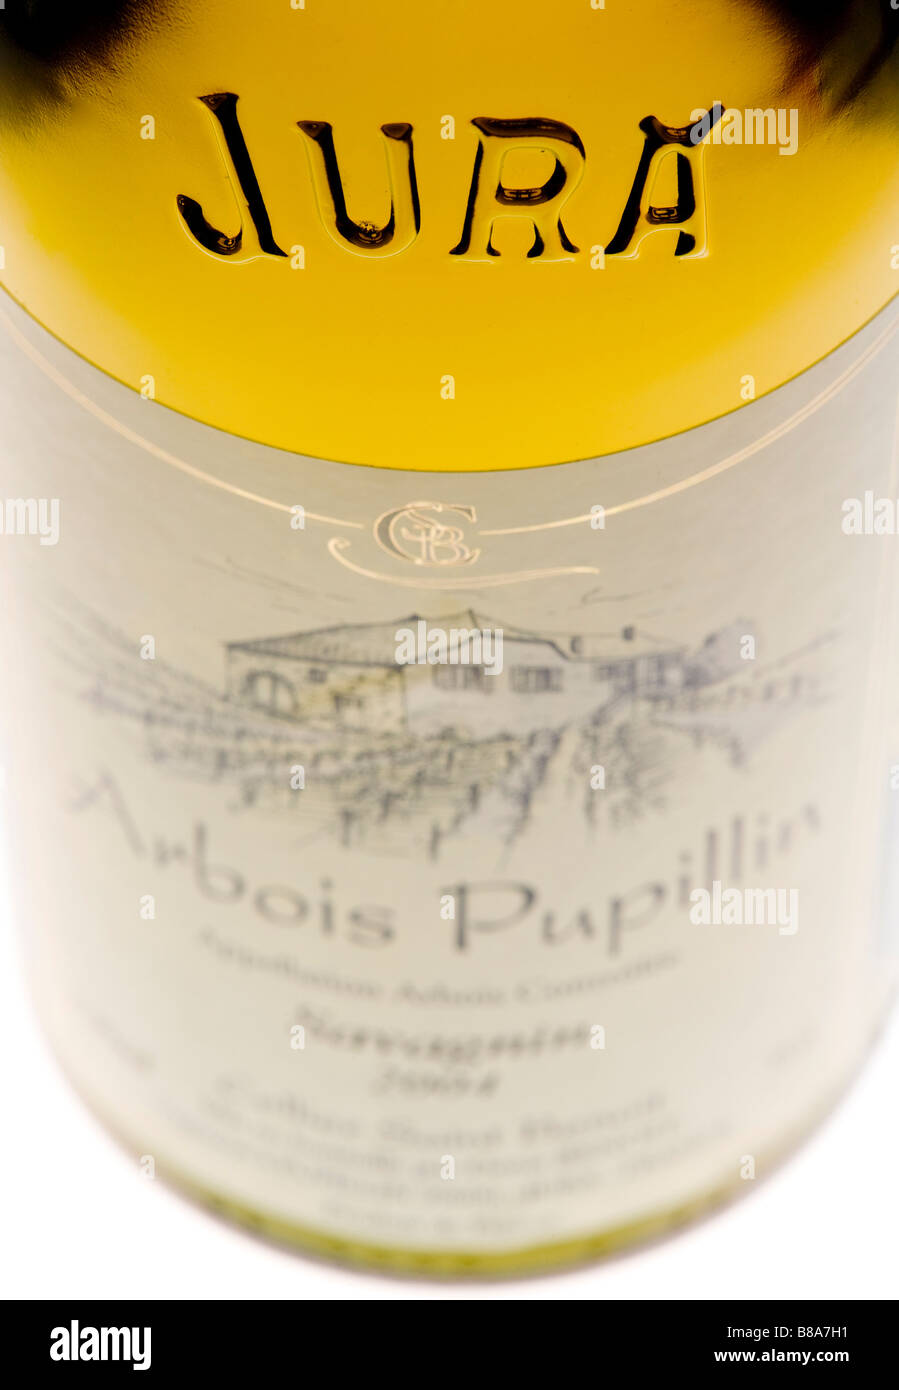 Bouteille de vin s détail Jura France Banque D'Images